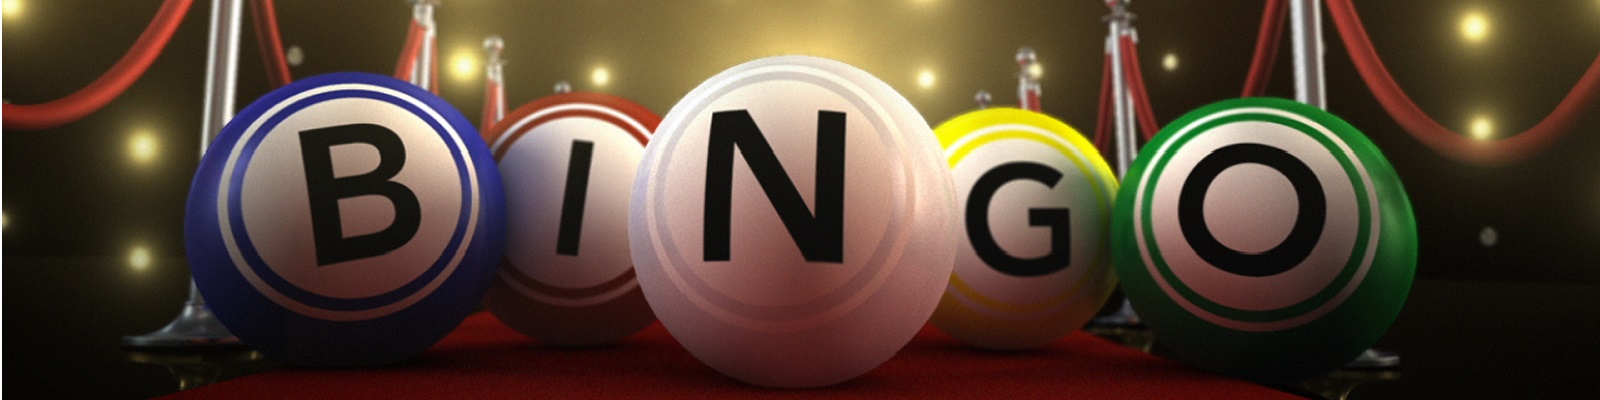 Online casino bingo